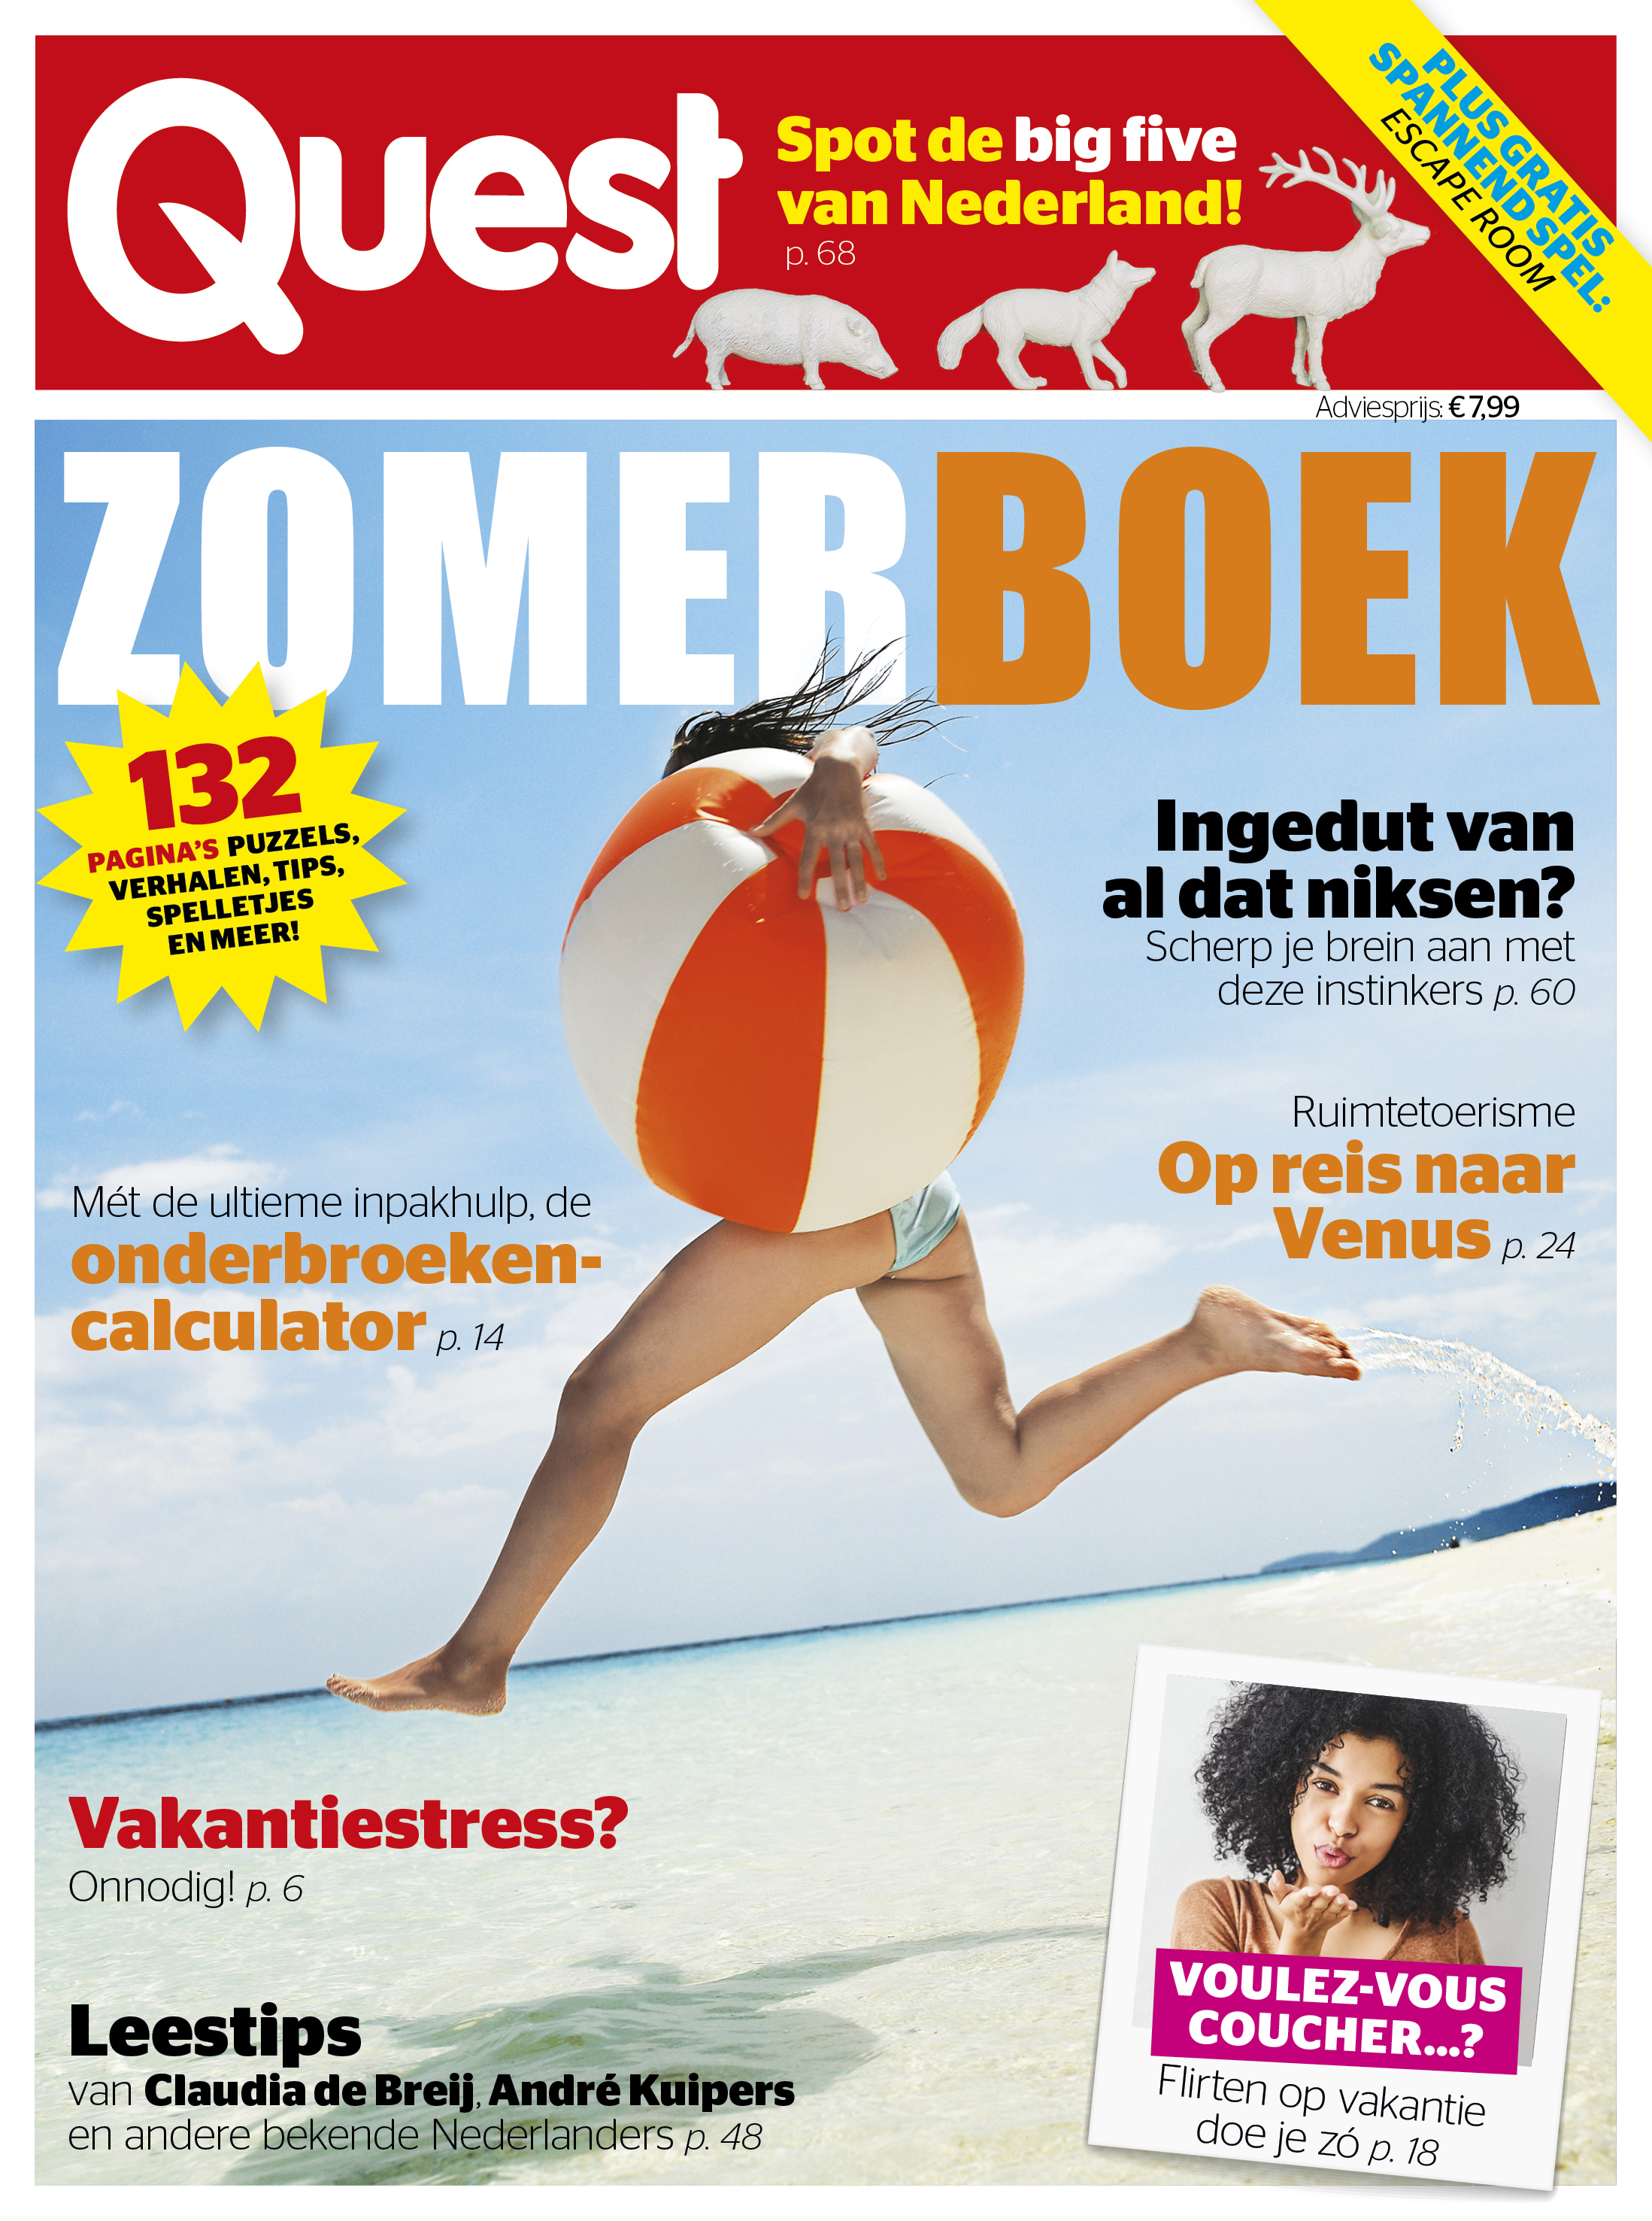 Quest Zomerboek 2022 - tijdschrift - vakantieboek